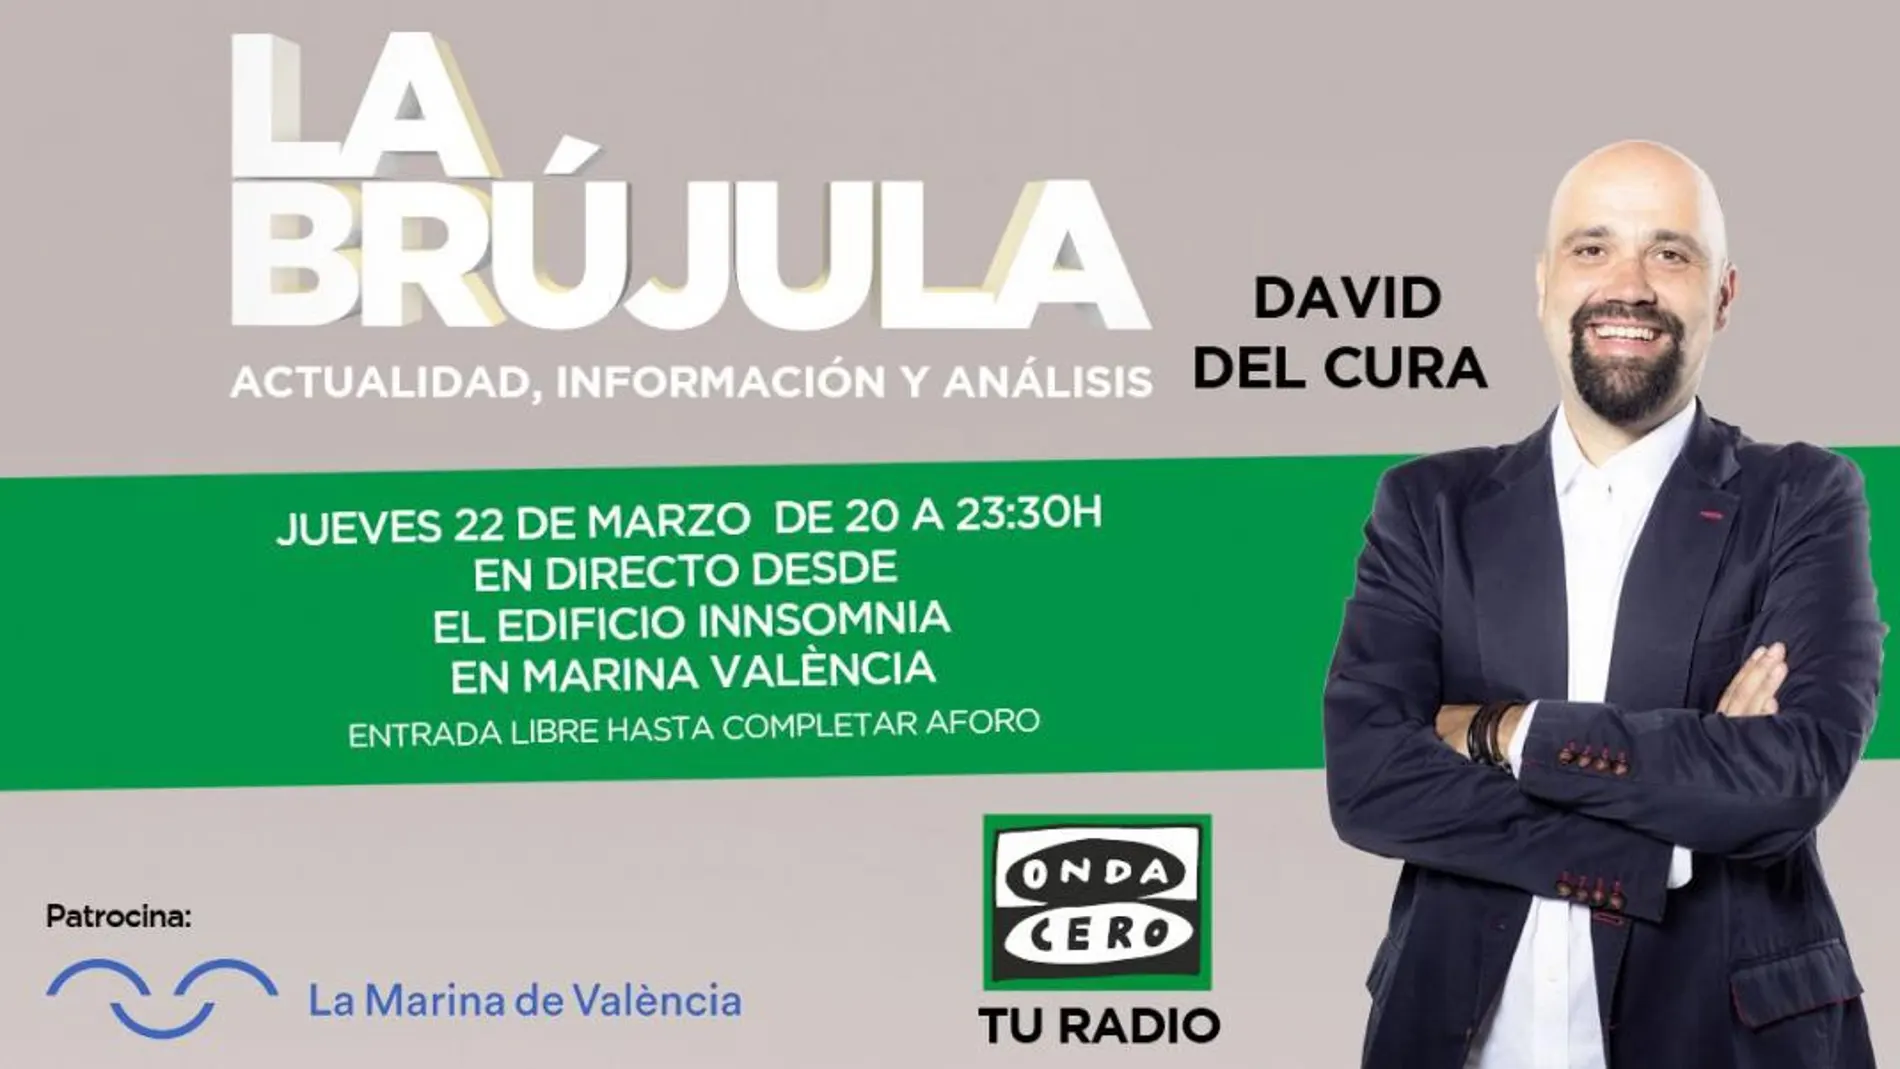 David del Cura y su equipo harán “La Brújula” esta noche en Valencia